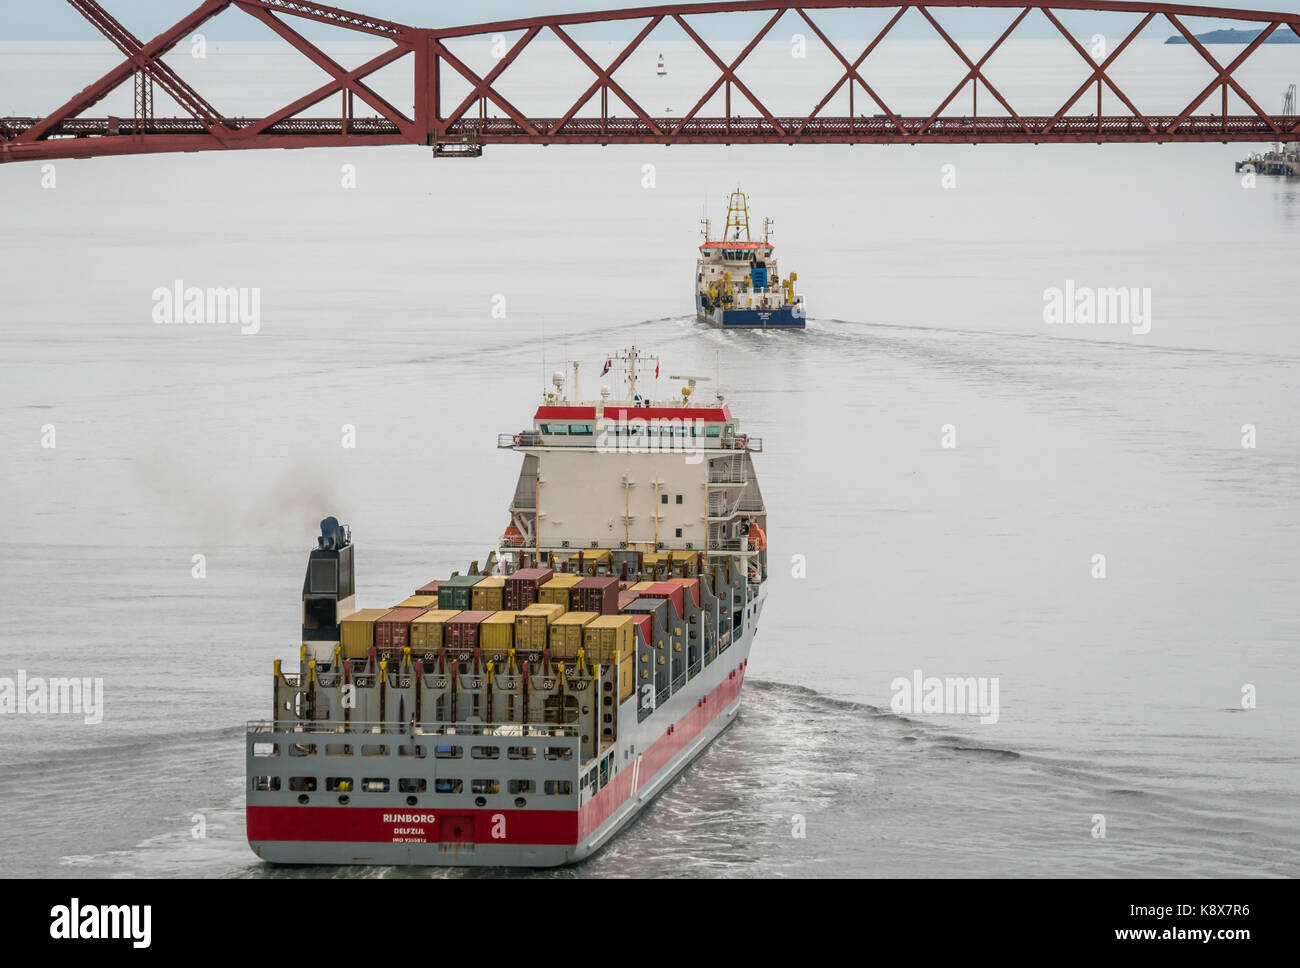 Containerschiff Rijnborg, aus den Niederlanden mit Cargo segeln in Richtung Ausleger Forth Rail Bridge, Schottland, Großbritannien, mit ukd Orca Suction Hopper Stockfoto